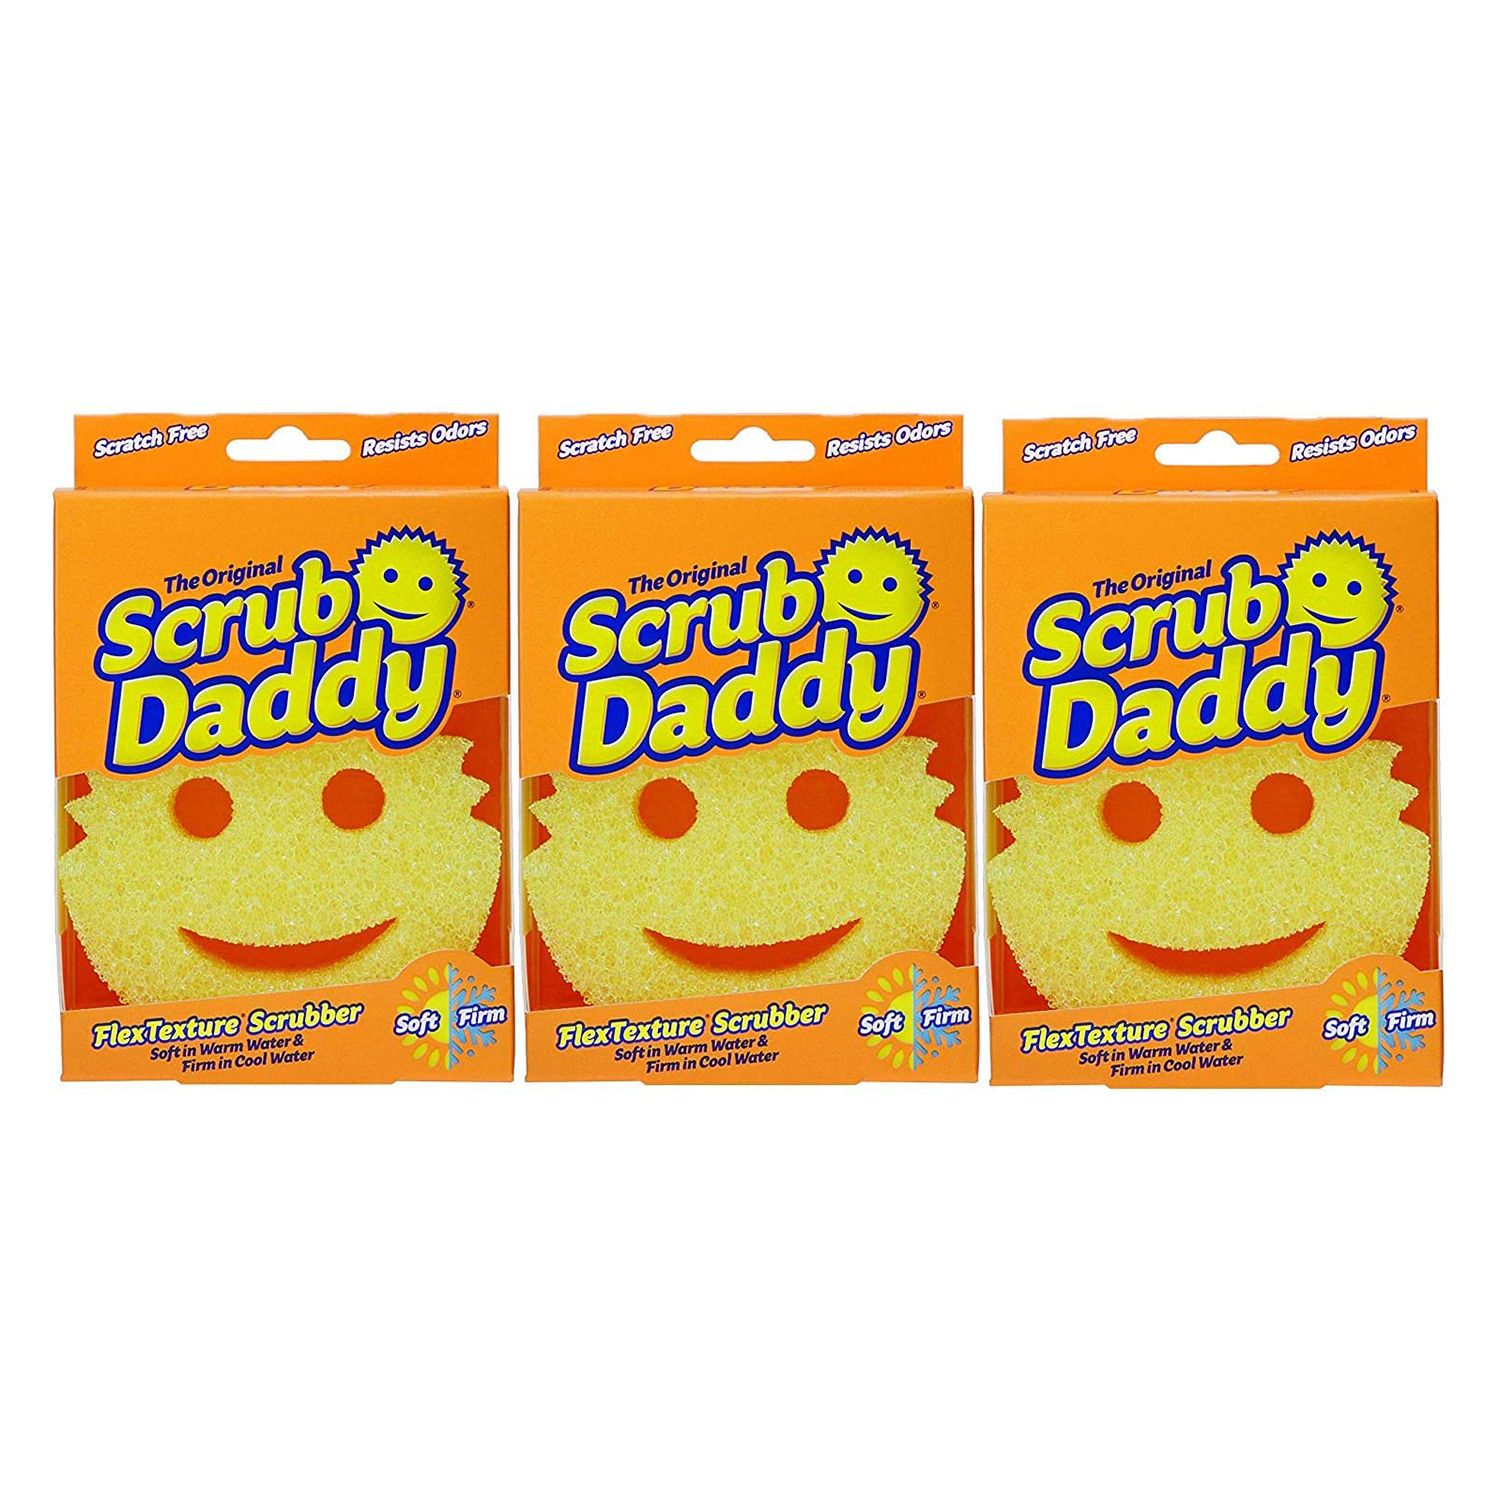 إسفنجة Scrub Daddy الأصلية - أداة تنظيف خالية من الخدوش للأطباق والمنزل